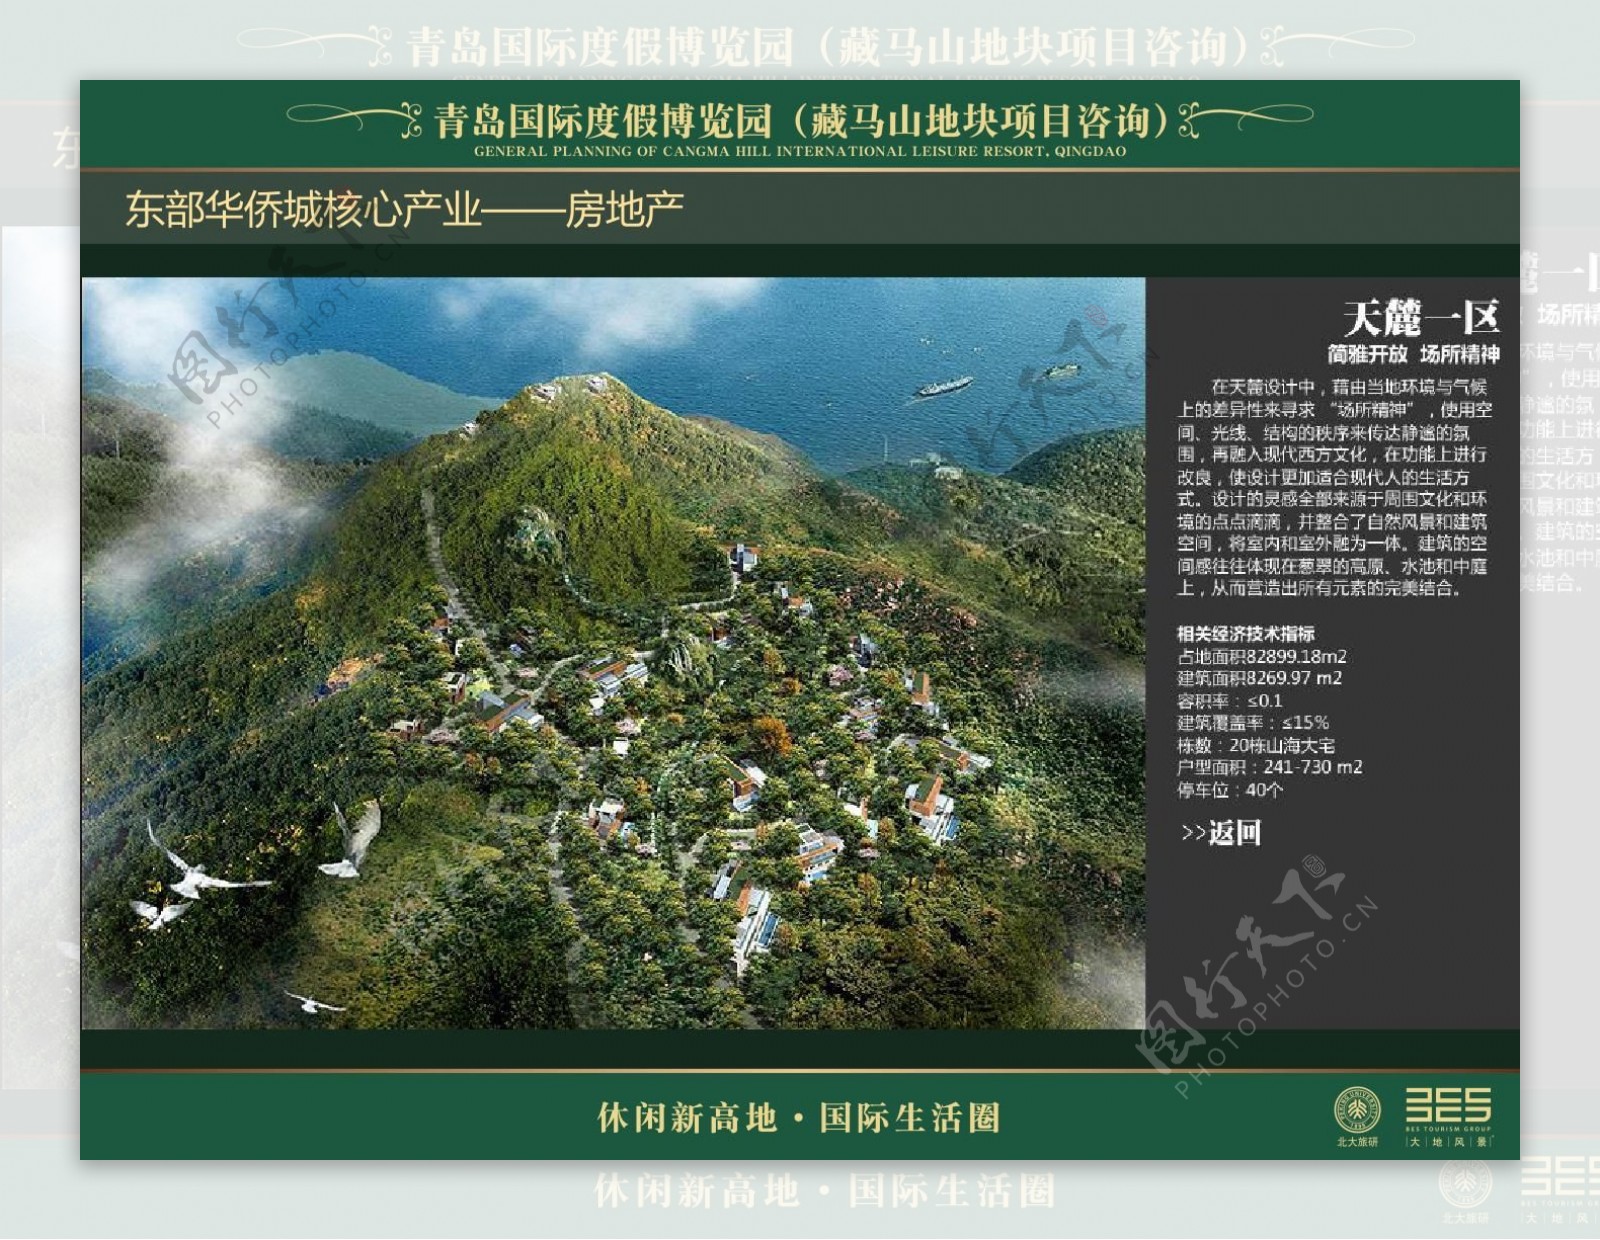 39.青岛国际度假博览园藏马山地块规划设计